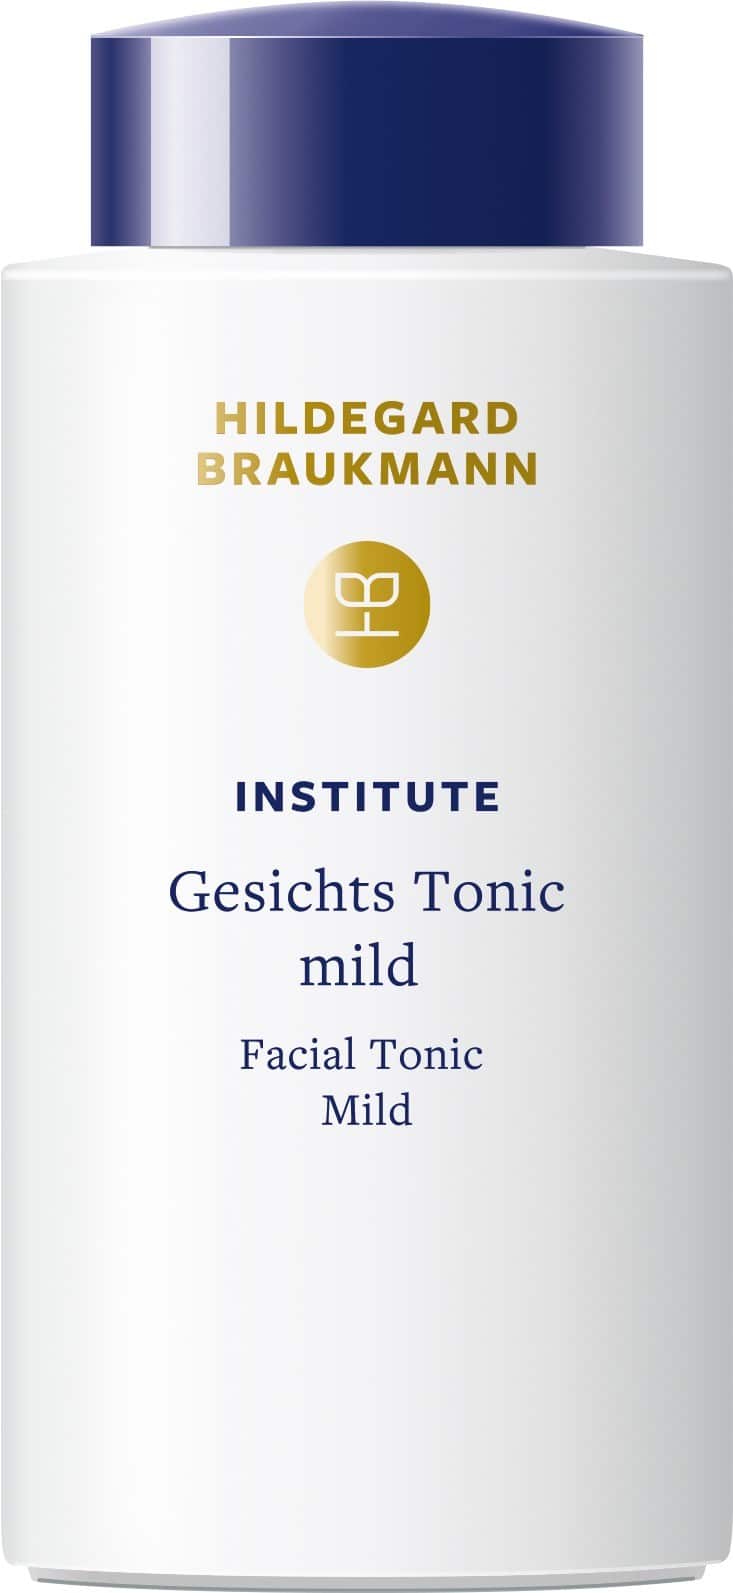 hildegard-braukmann-institute-gesichts-tonic-mild